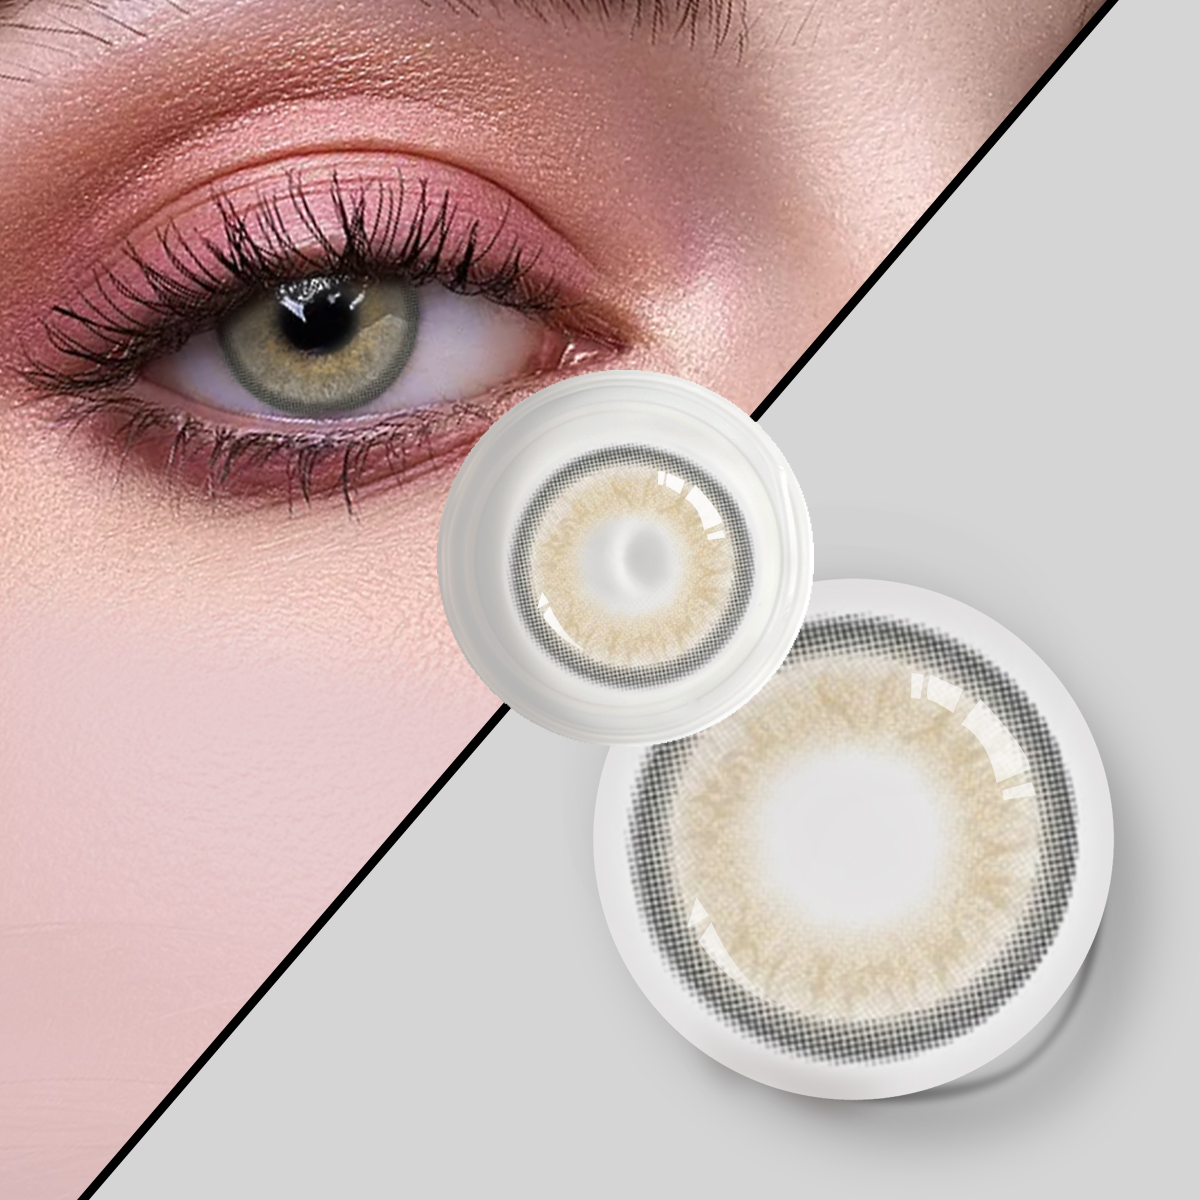 Baskı Fabrikası Sanat Kağıdı Kontakt Lensler Kutu Moda Kozmetik Renkli Göz Kontakt Lens Karton